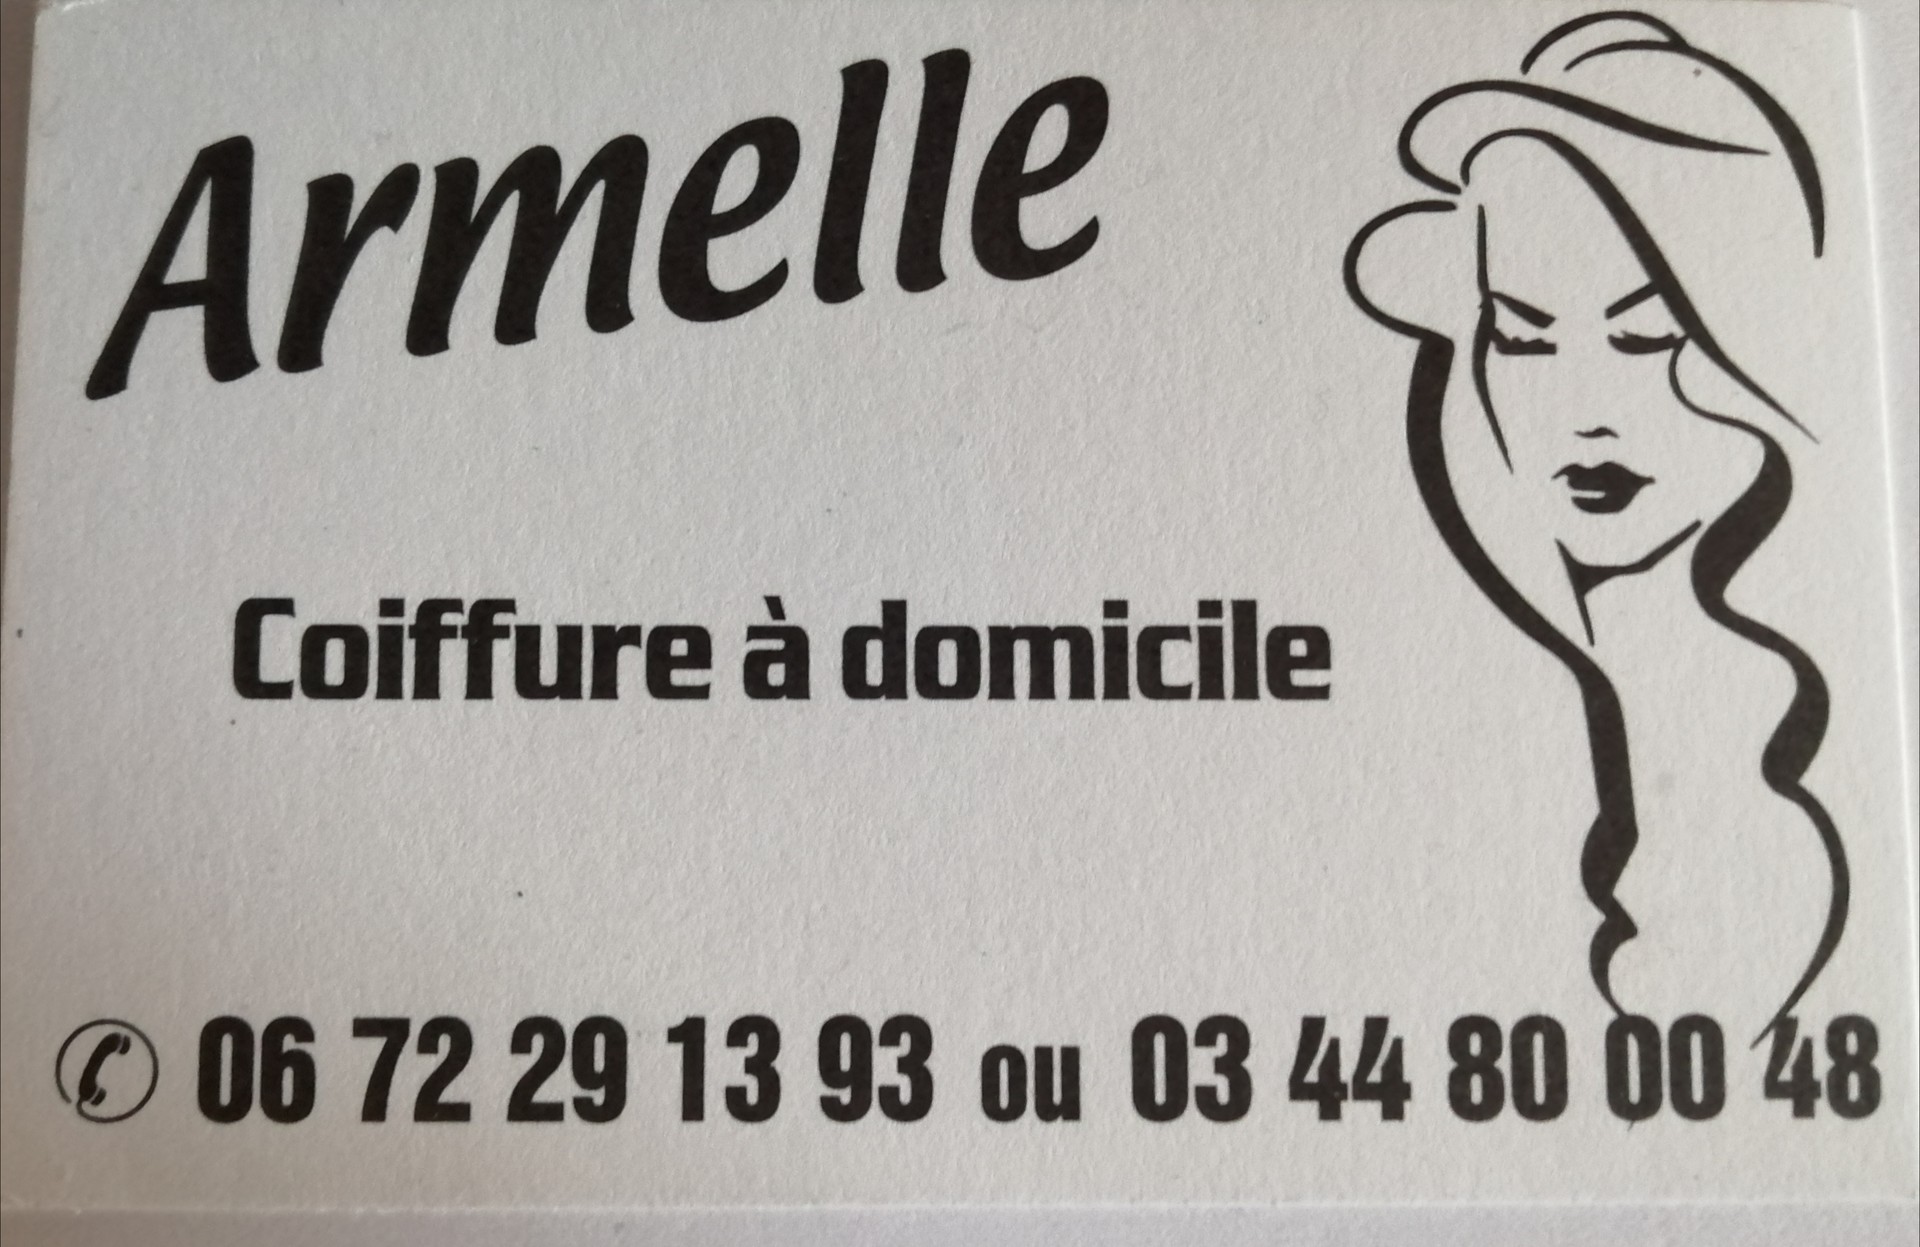 Boutique Armelle Coiffure - J'achète Oise Picarde